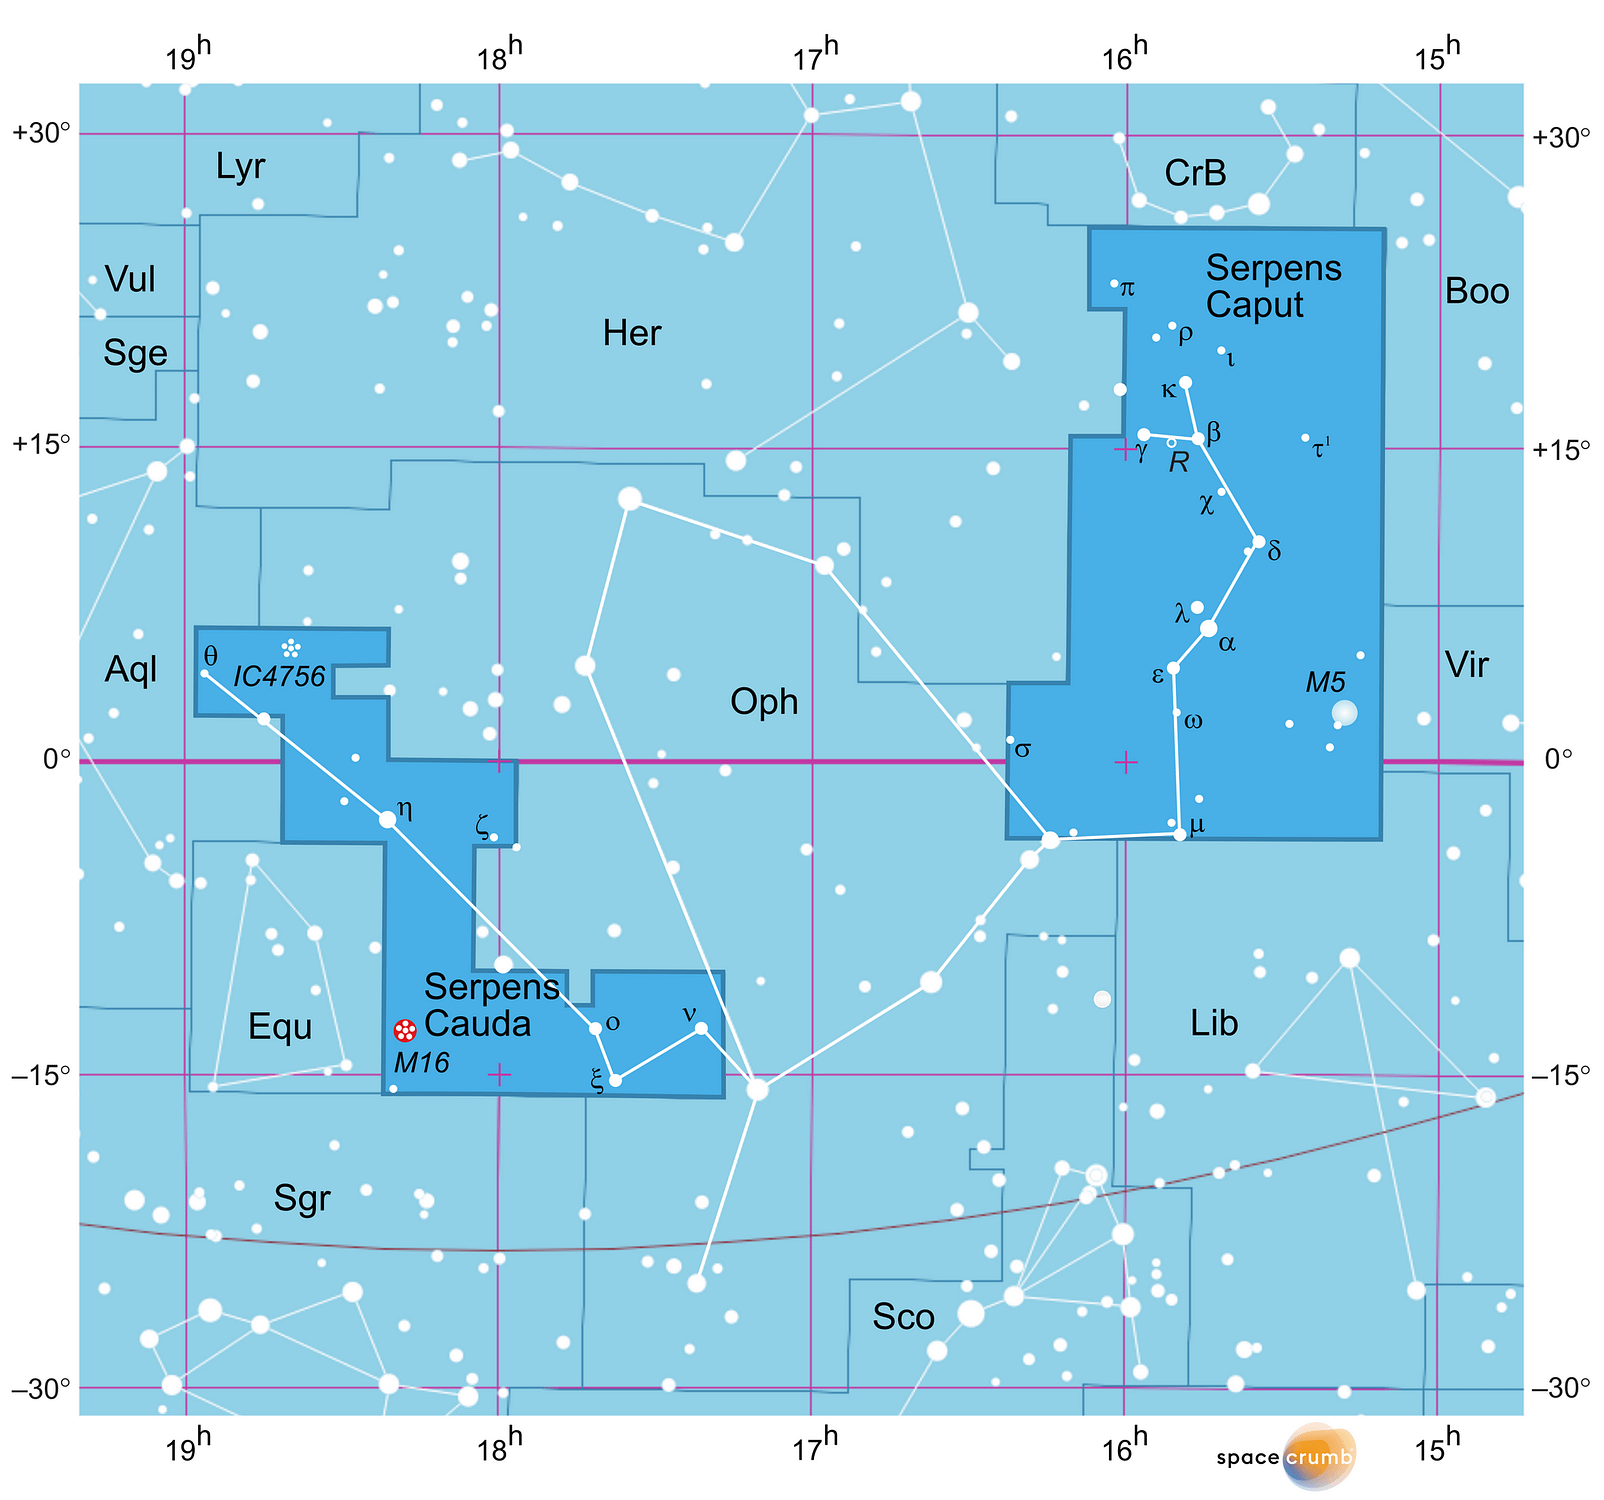 Eine mit Koordinaten versehene grafische Karte eines Himmelsausschnitts zeigt weiße Sterne auf hellblauem Hintergrund. Die Fläche, die das zweigeteilte Sternbild Schlange einnimmt, ist dunkelblau hervorgehoben.